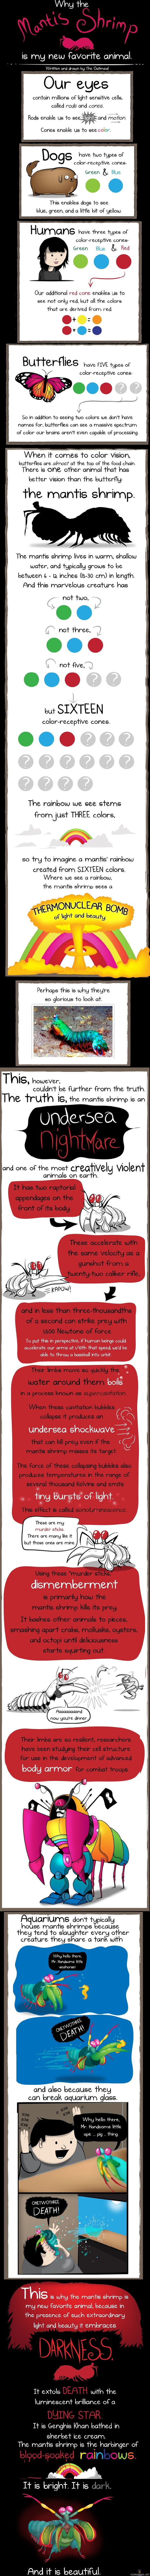 Mantis shrimp - The oatmeal kertoo sarjakuvana tästä merien koviksesta